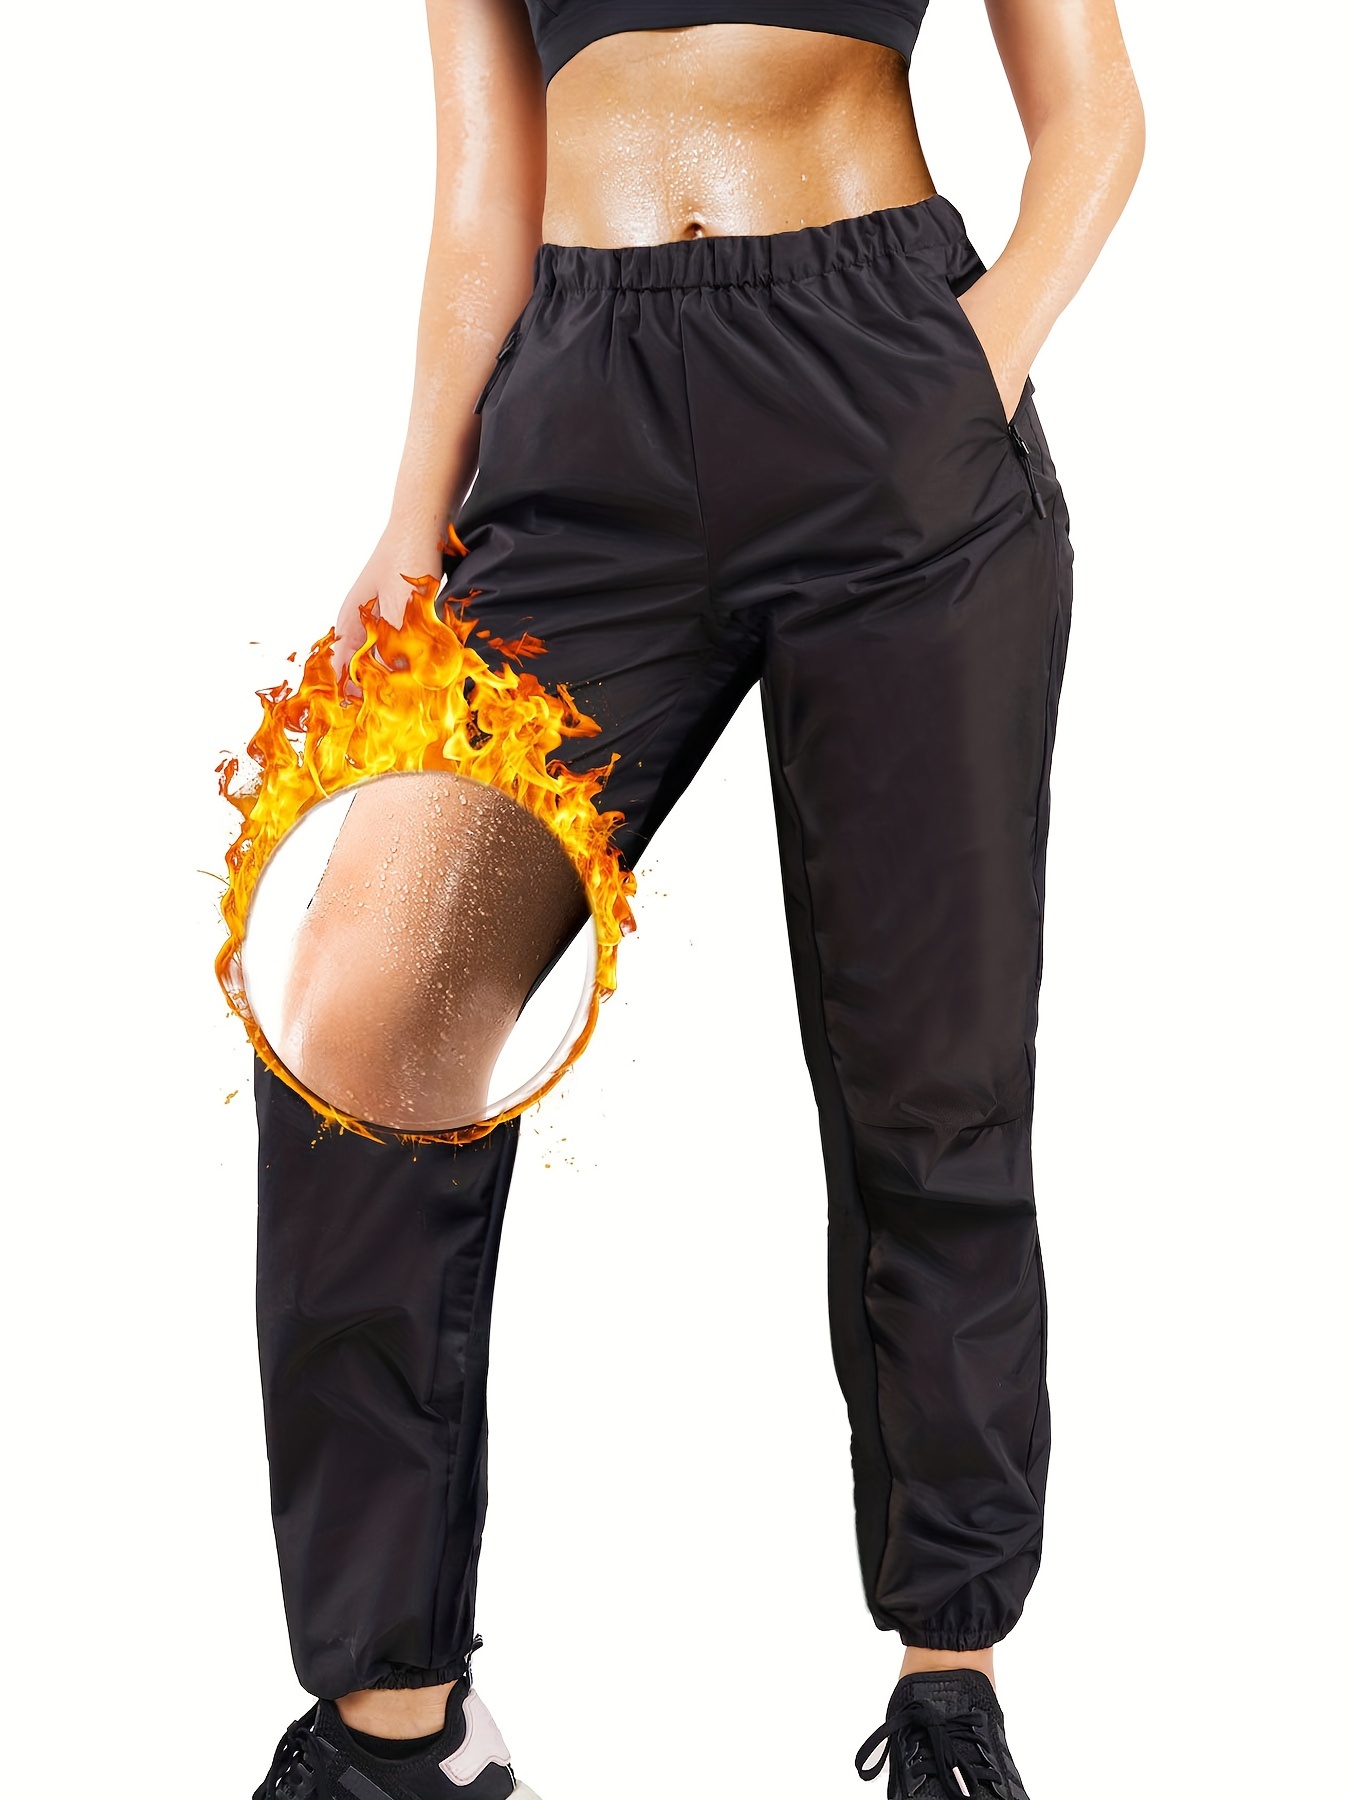 Women Heat Cycle Sweat Fat Burning Workout Slimming Fashion Sauna Pants